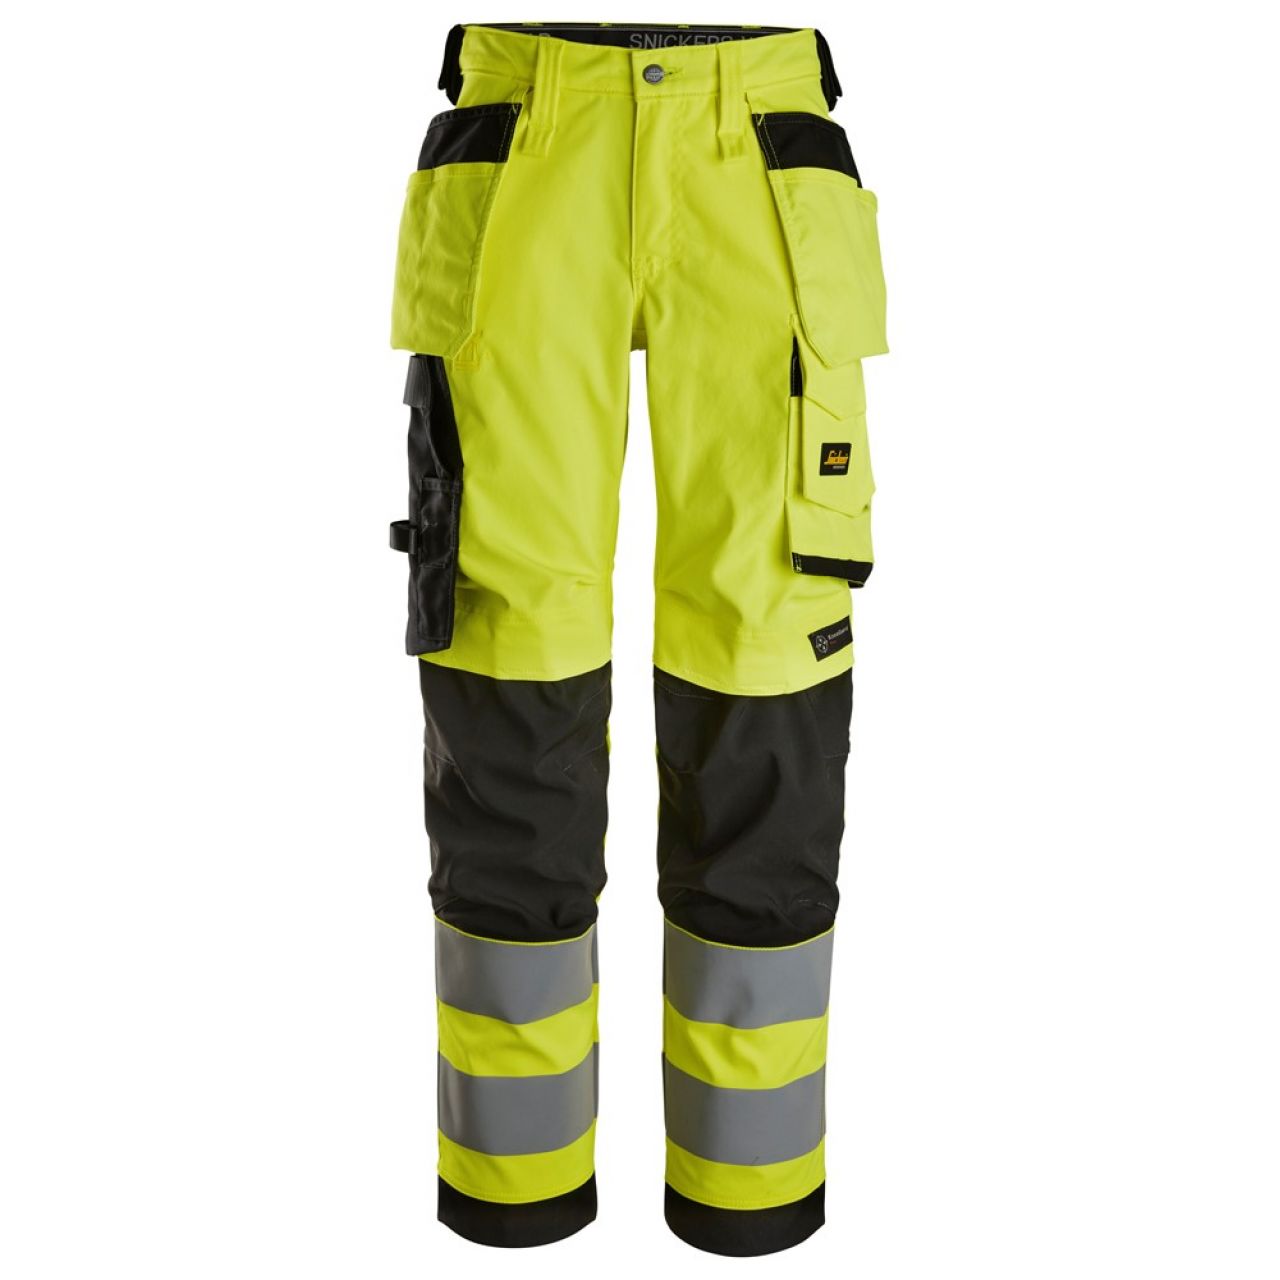 6743 Pantalones largos de trabajo elásticos de alta visibilidad clase 2 para mujer con bolsillos flotantes amarillo-negro talla 20